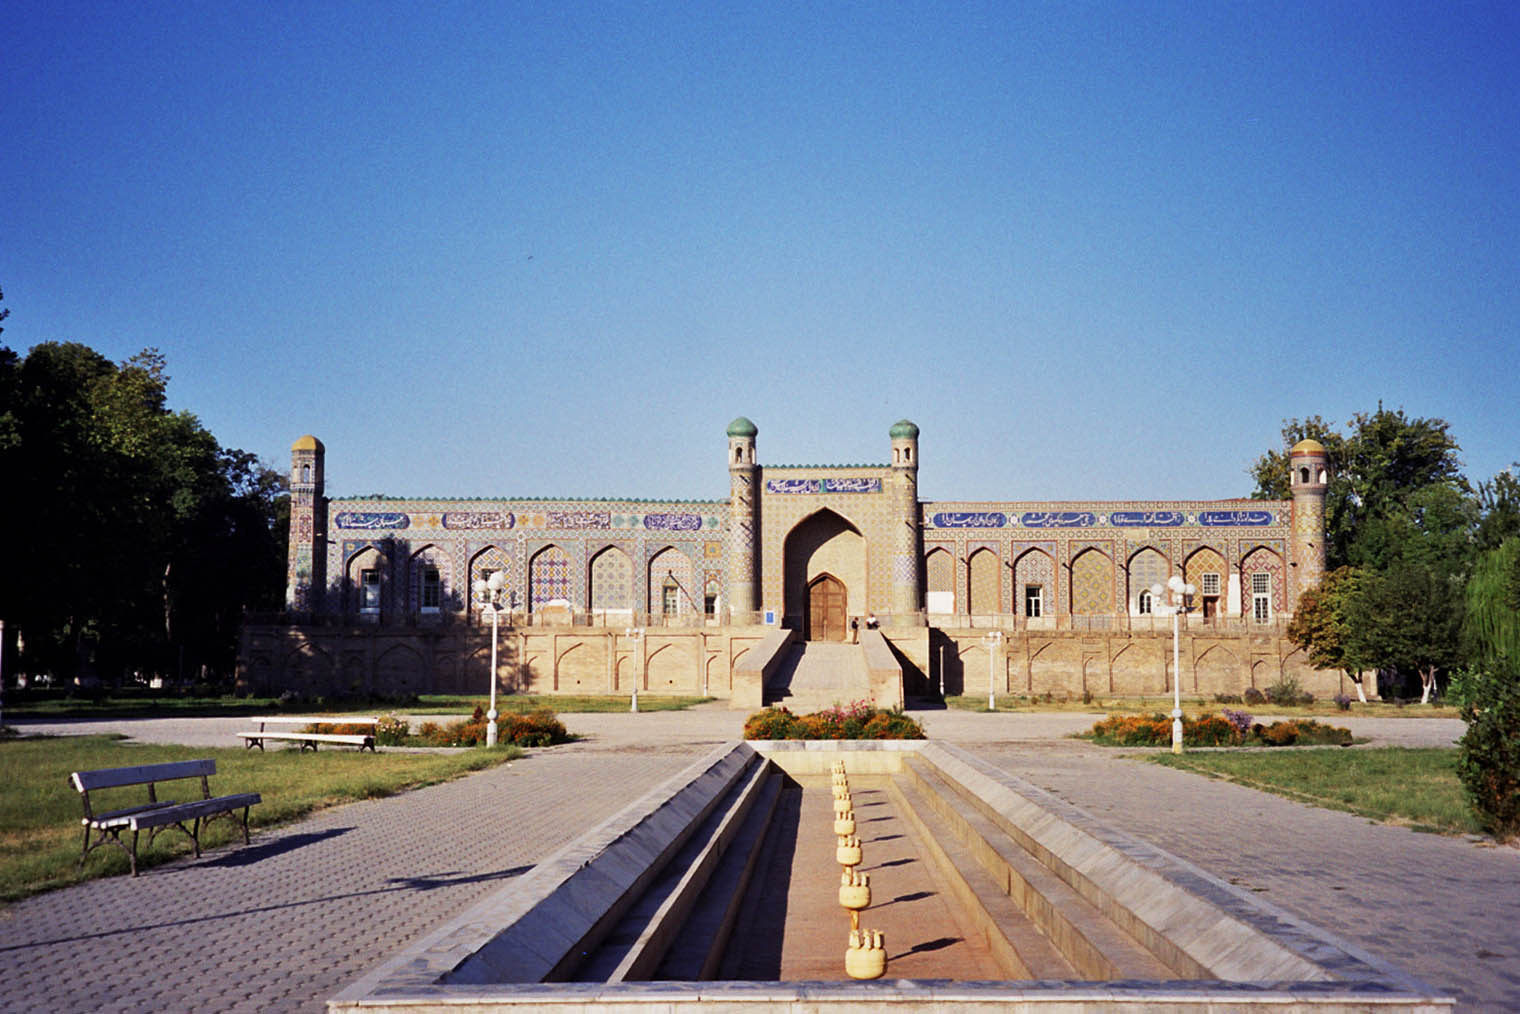 После упразднения Кокандского ханства дворец Худояр-хана использовали по⁠-⁠разному, например как церковь и военный госпиталь. Фотография: upyernoz / Wikimedia